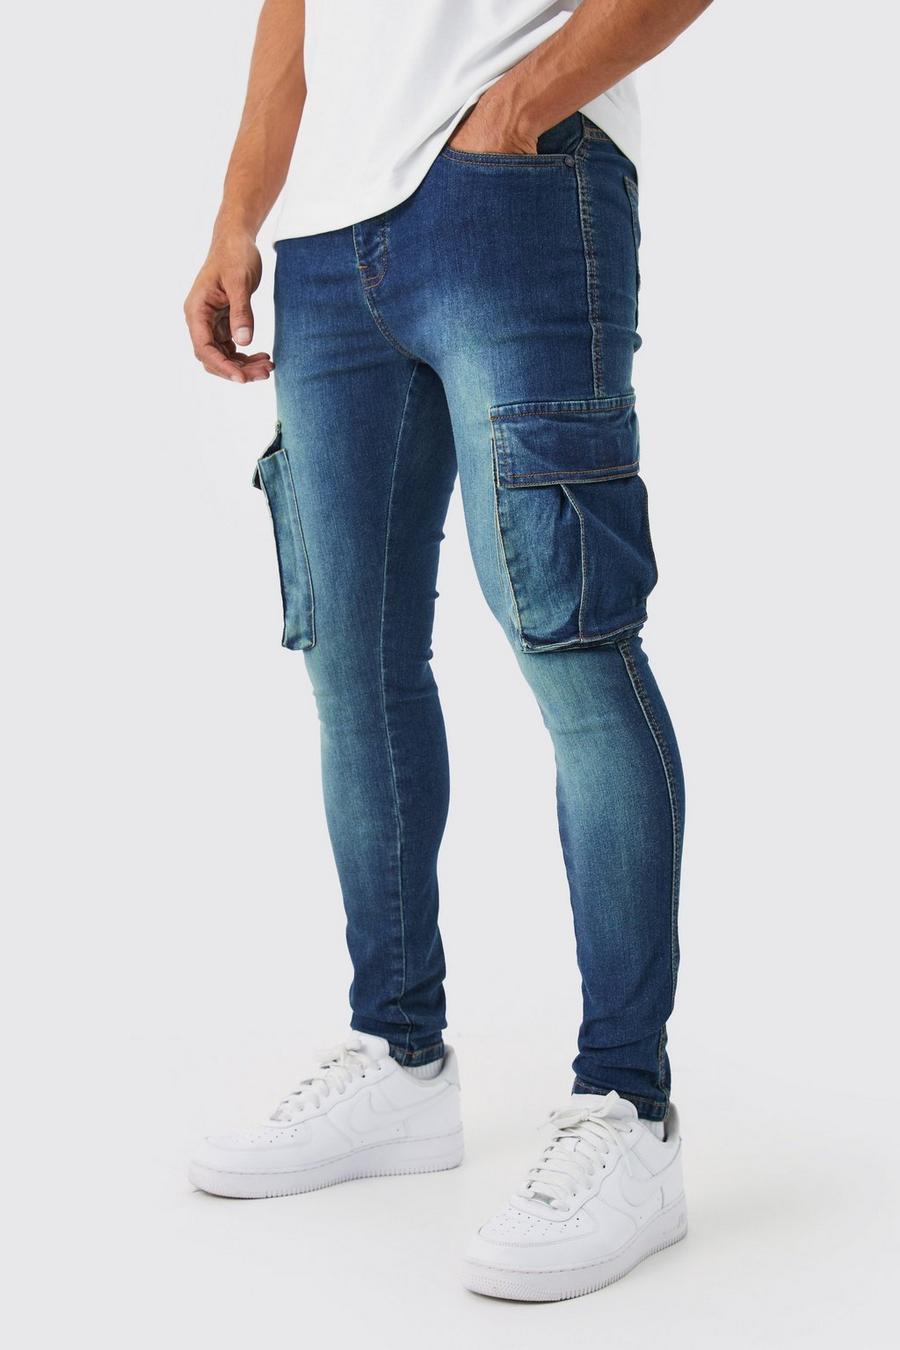 Jeans Cargo Super Skinny Fit in Stretch, Antique blue